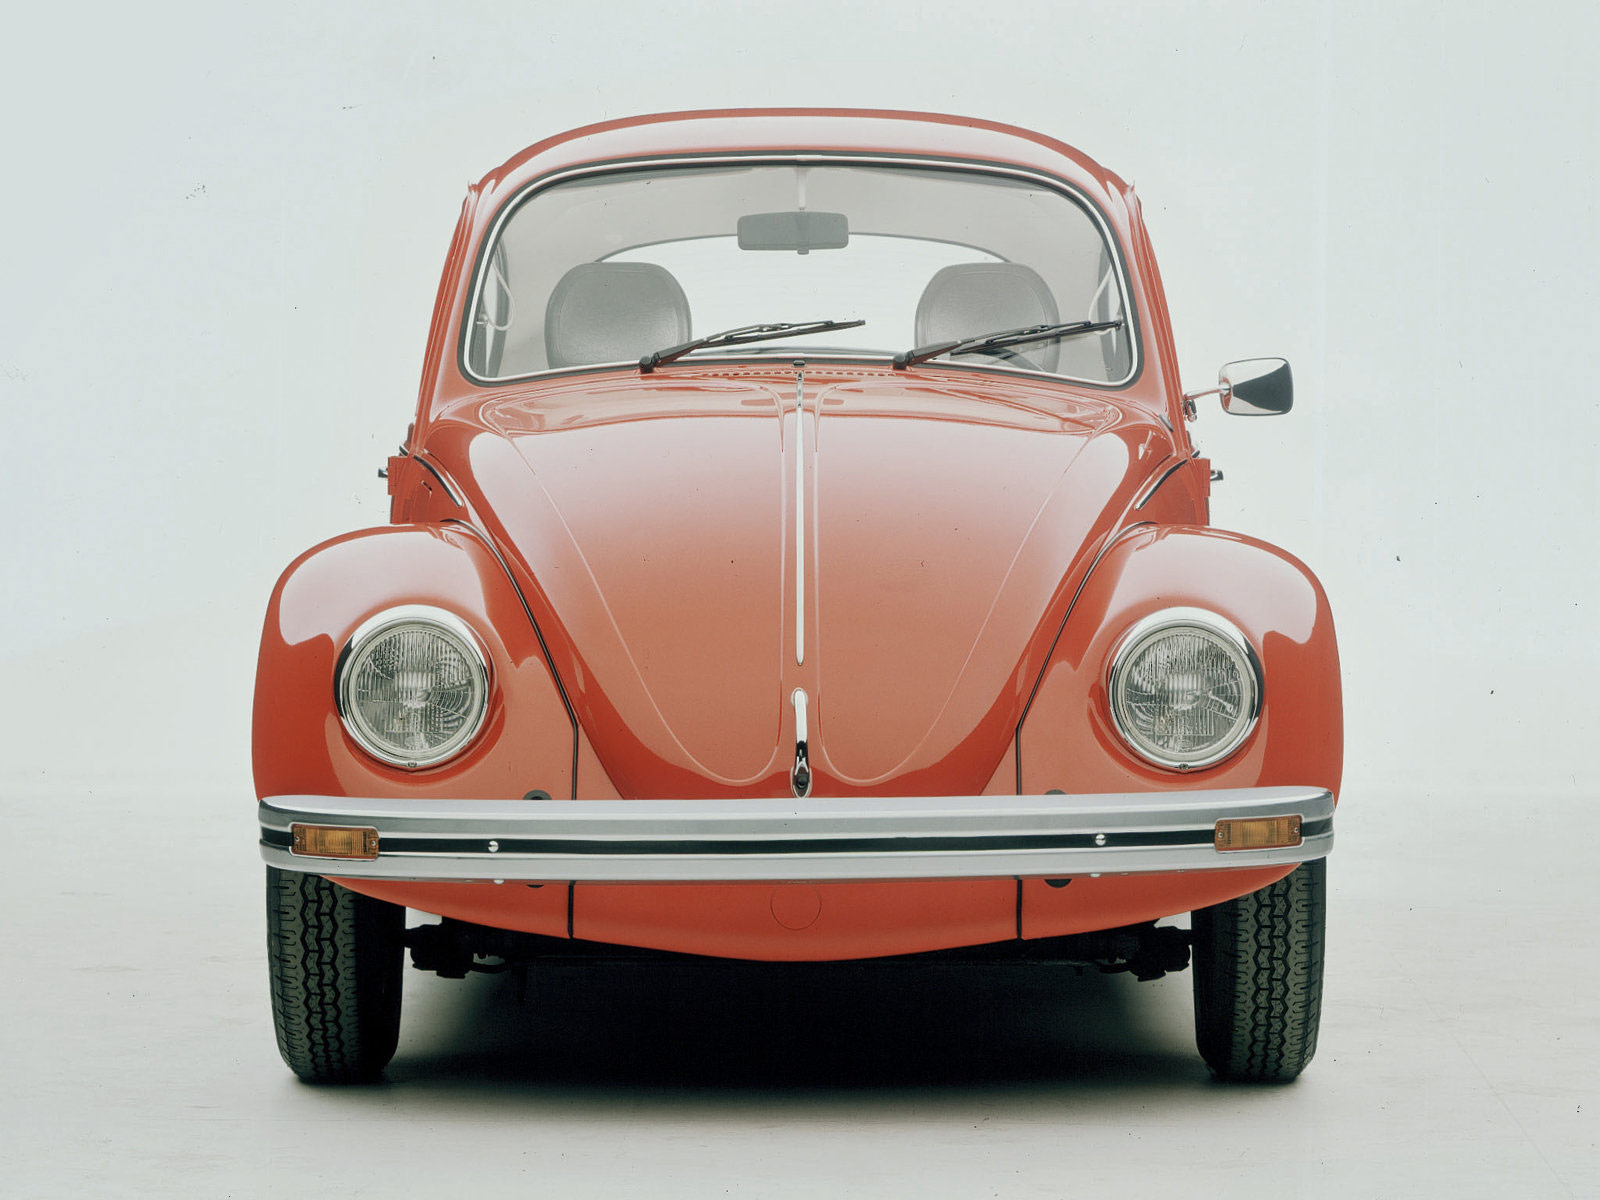 Volkswagen wallpaper. All Volkswagen Models: 1938 VW Beetle. Volkswagen wallpaper